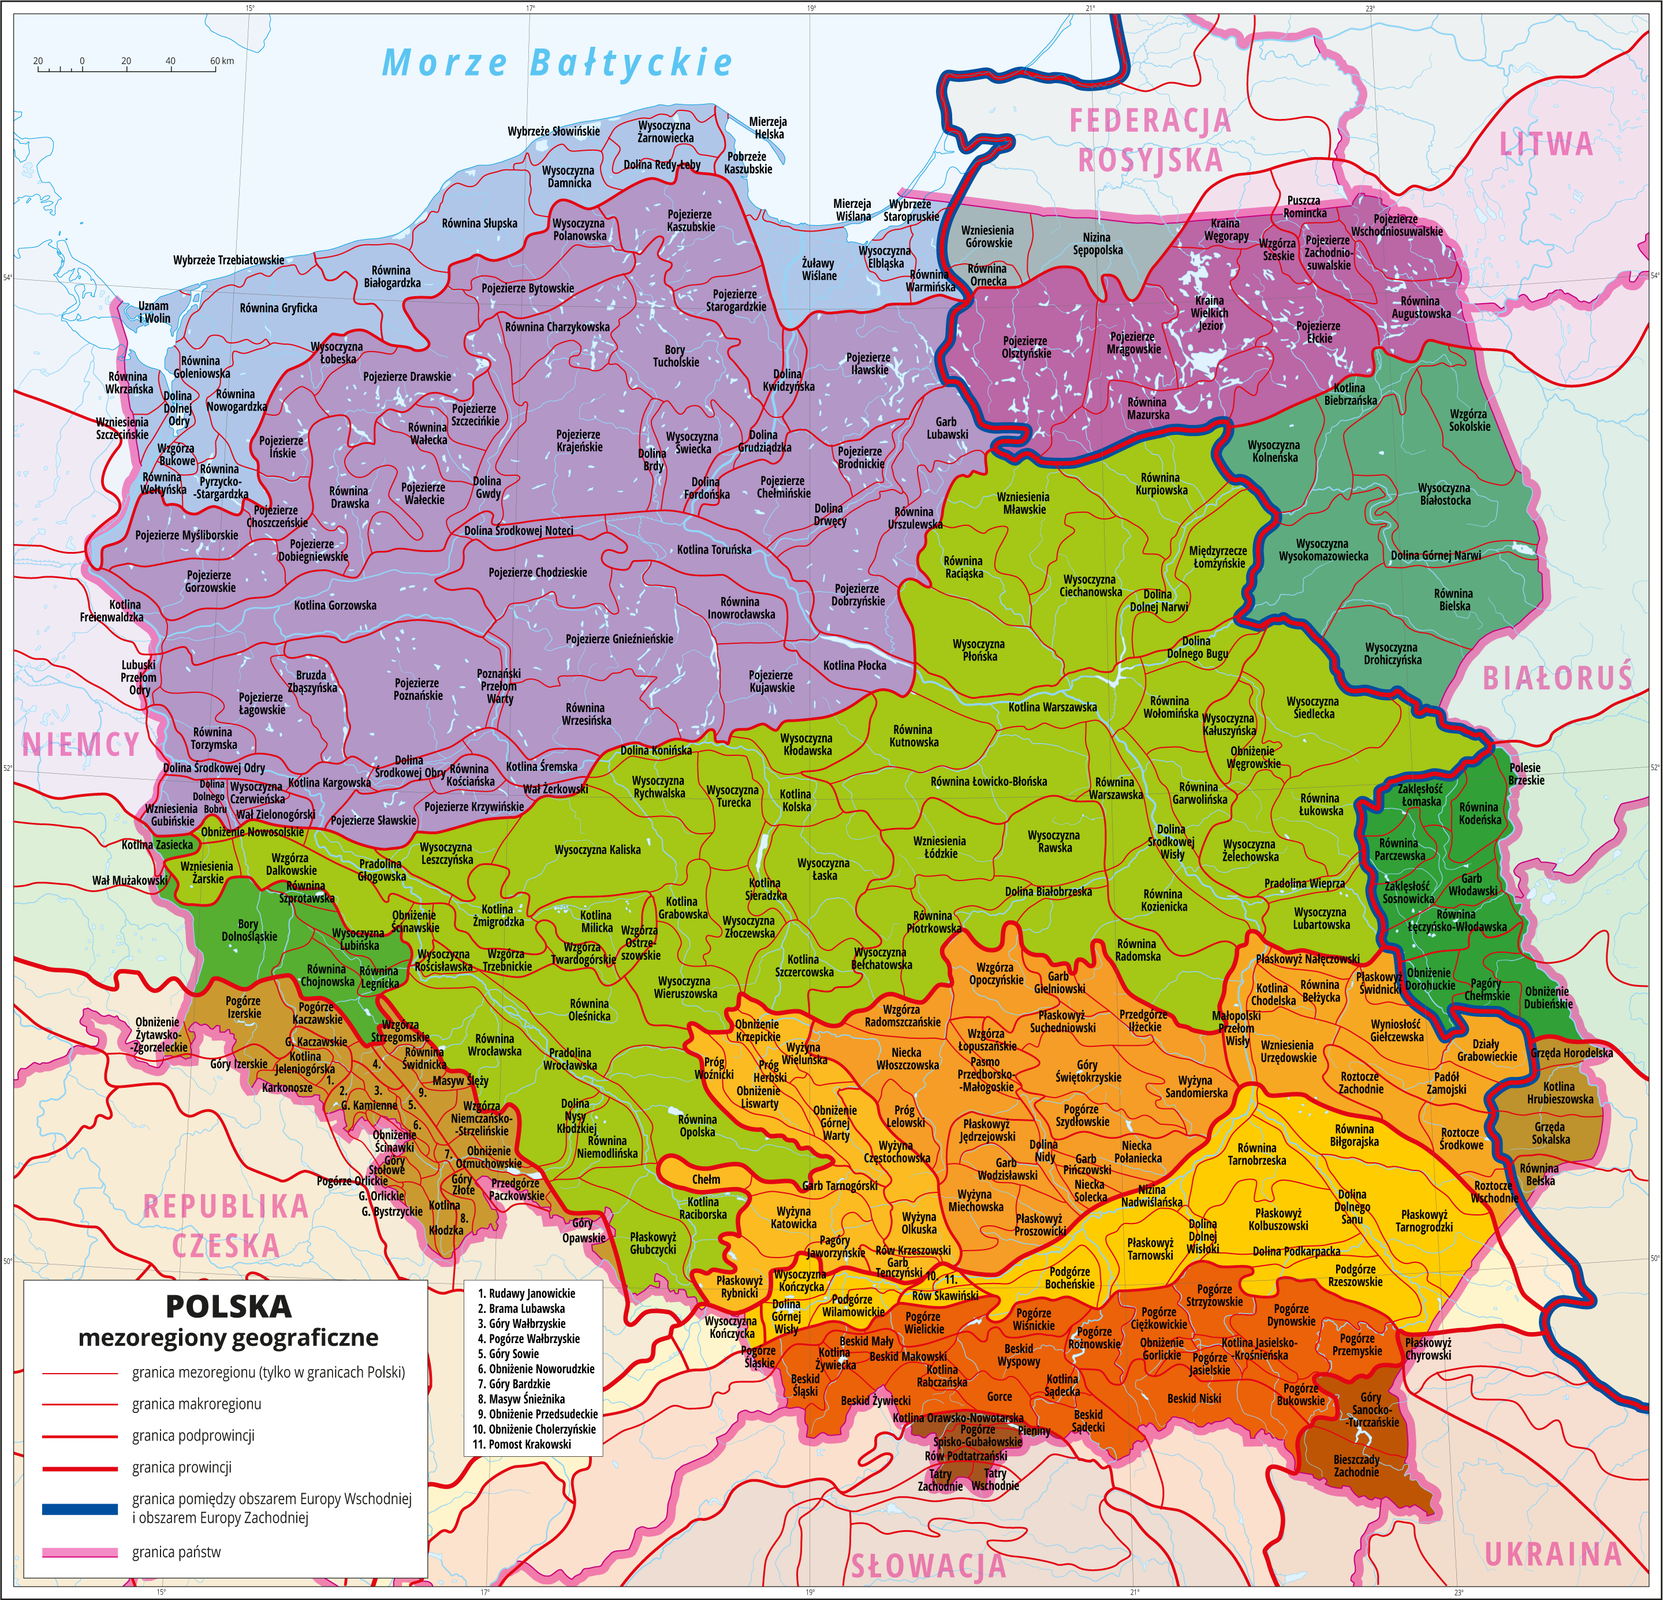 Ilustracja przedstawia mapę Polski z wydzielonymi różnymi odcieniami koloru czerwonego, pomarańczowego i zielonego prowincjami geograficznymi. Zaznaczono granice między podprowincjami geograficznymi w ramach wydzielonych wcześniej prowincji. Zaznaczono granice makroregionów w obrębie podprowincji. W każdej podprowincji wydzielono kilka makroregionów. Cienkimi szarymi liniami zaznaczono granice mezoregionów w obrębie makroregionów i opisano je. W każdym makroregionie wydzielono kilka mezoregionów.